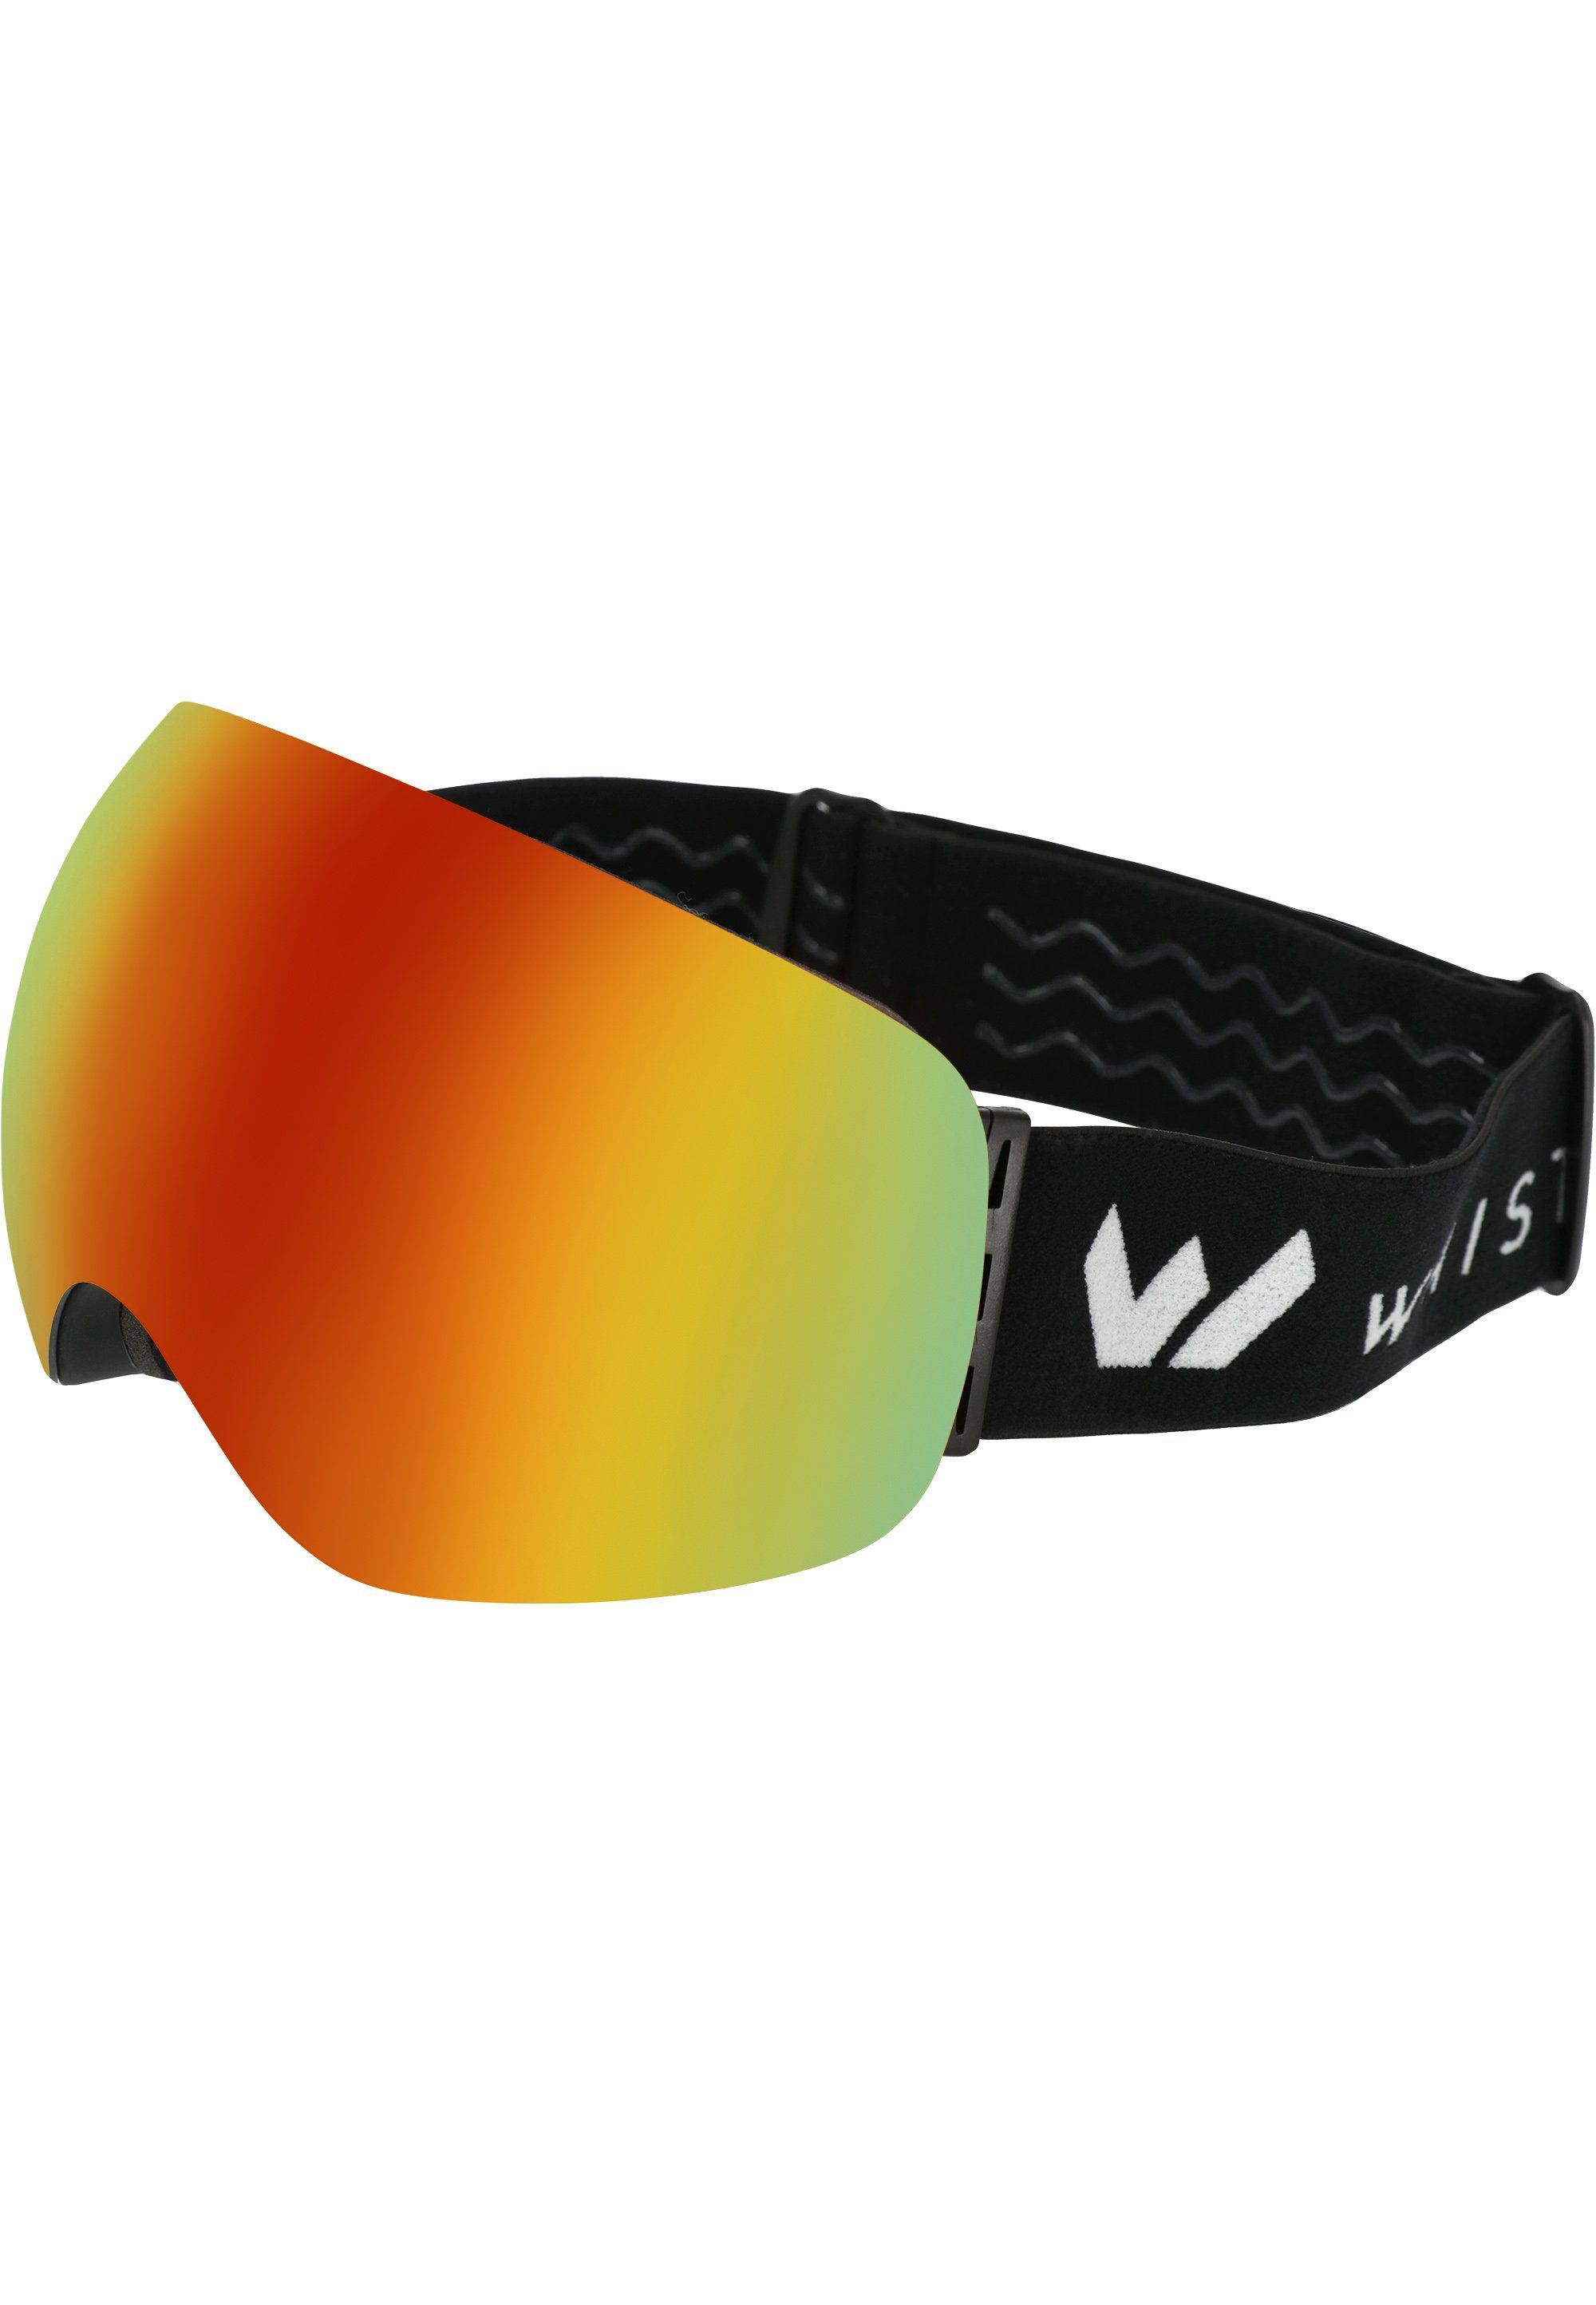 Skibrille WS6100, Anti-Fog-Beschichtung schwarz-gelb WHISTLER mit praktischer